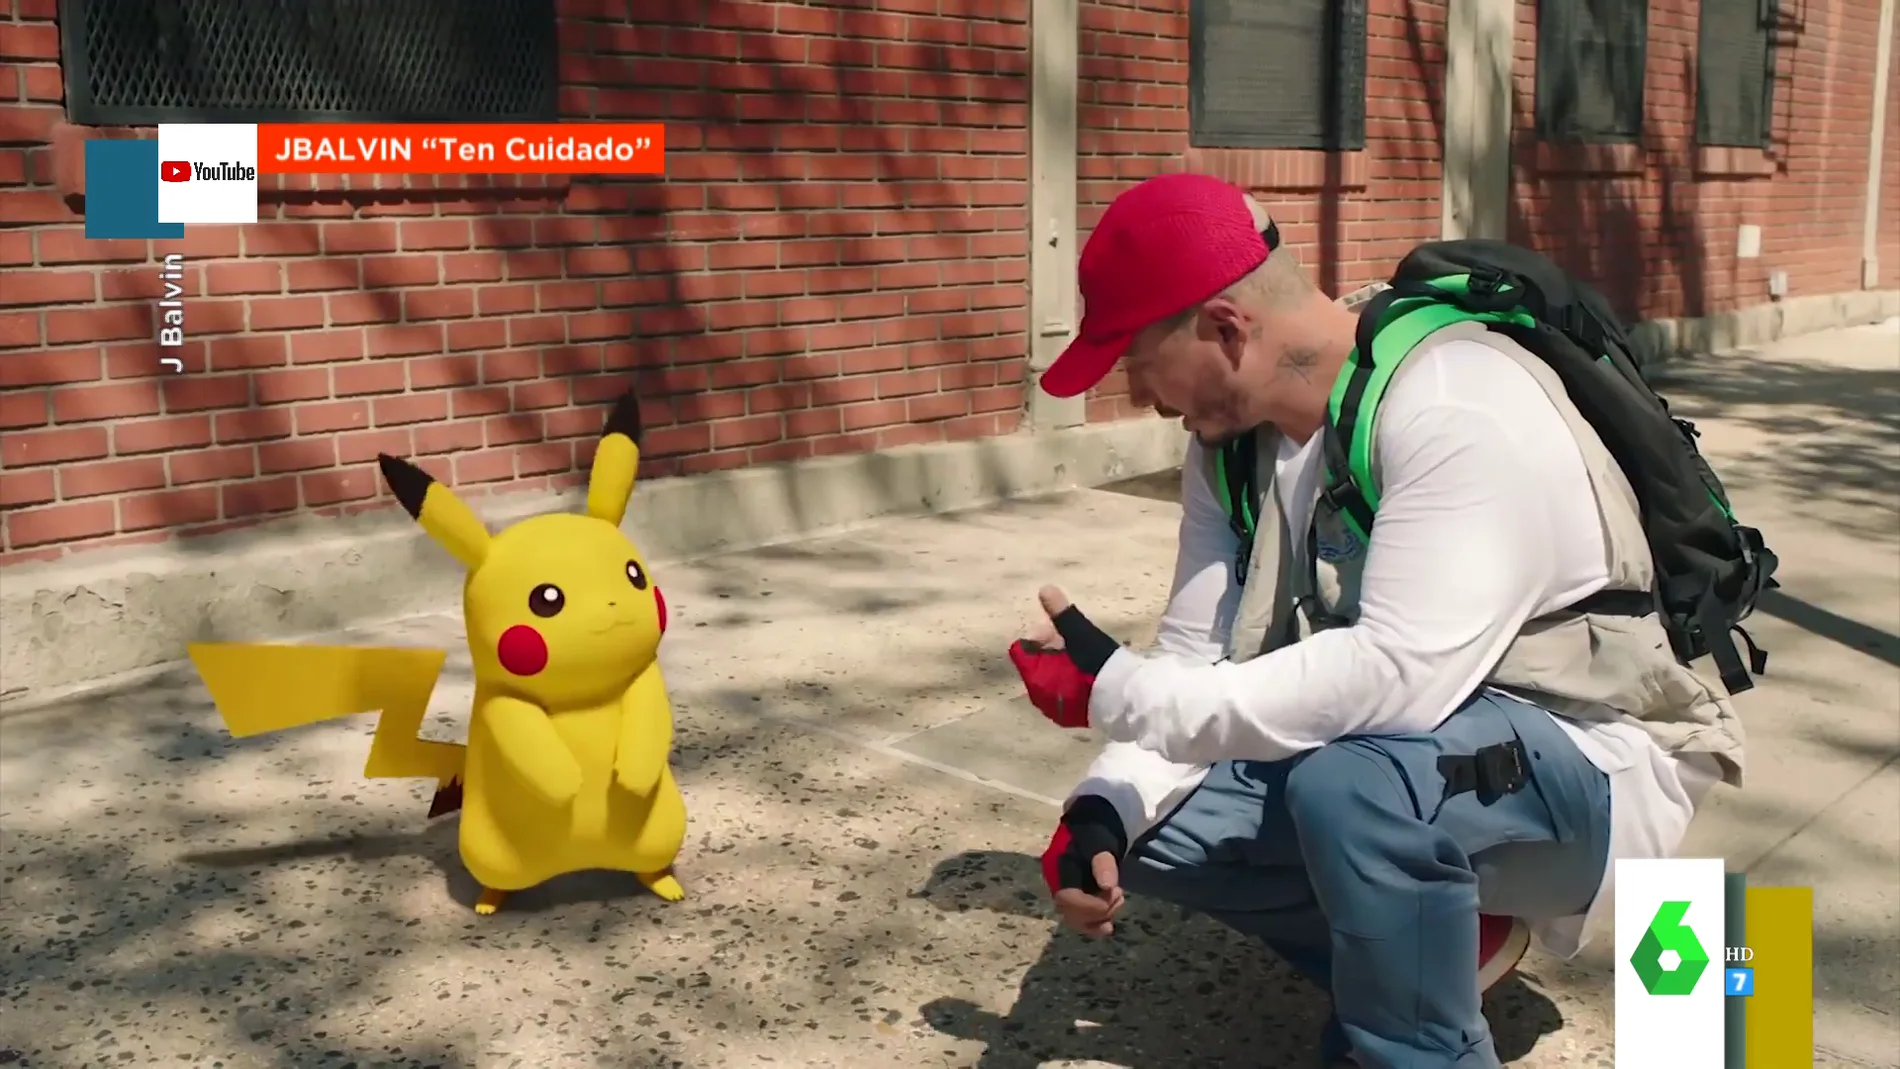 El 'cameo' de Pikachu en el último videoclip de J Balvin: Cristinini nos descubre el fenómeno Pokémon en su 25º aniversario